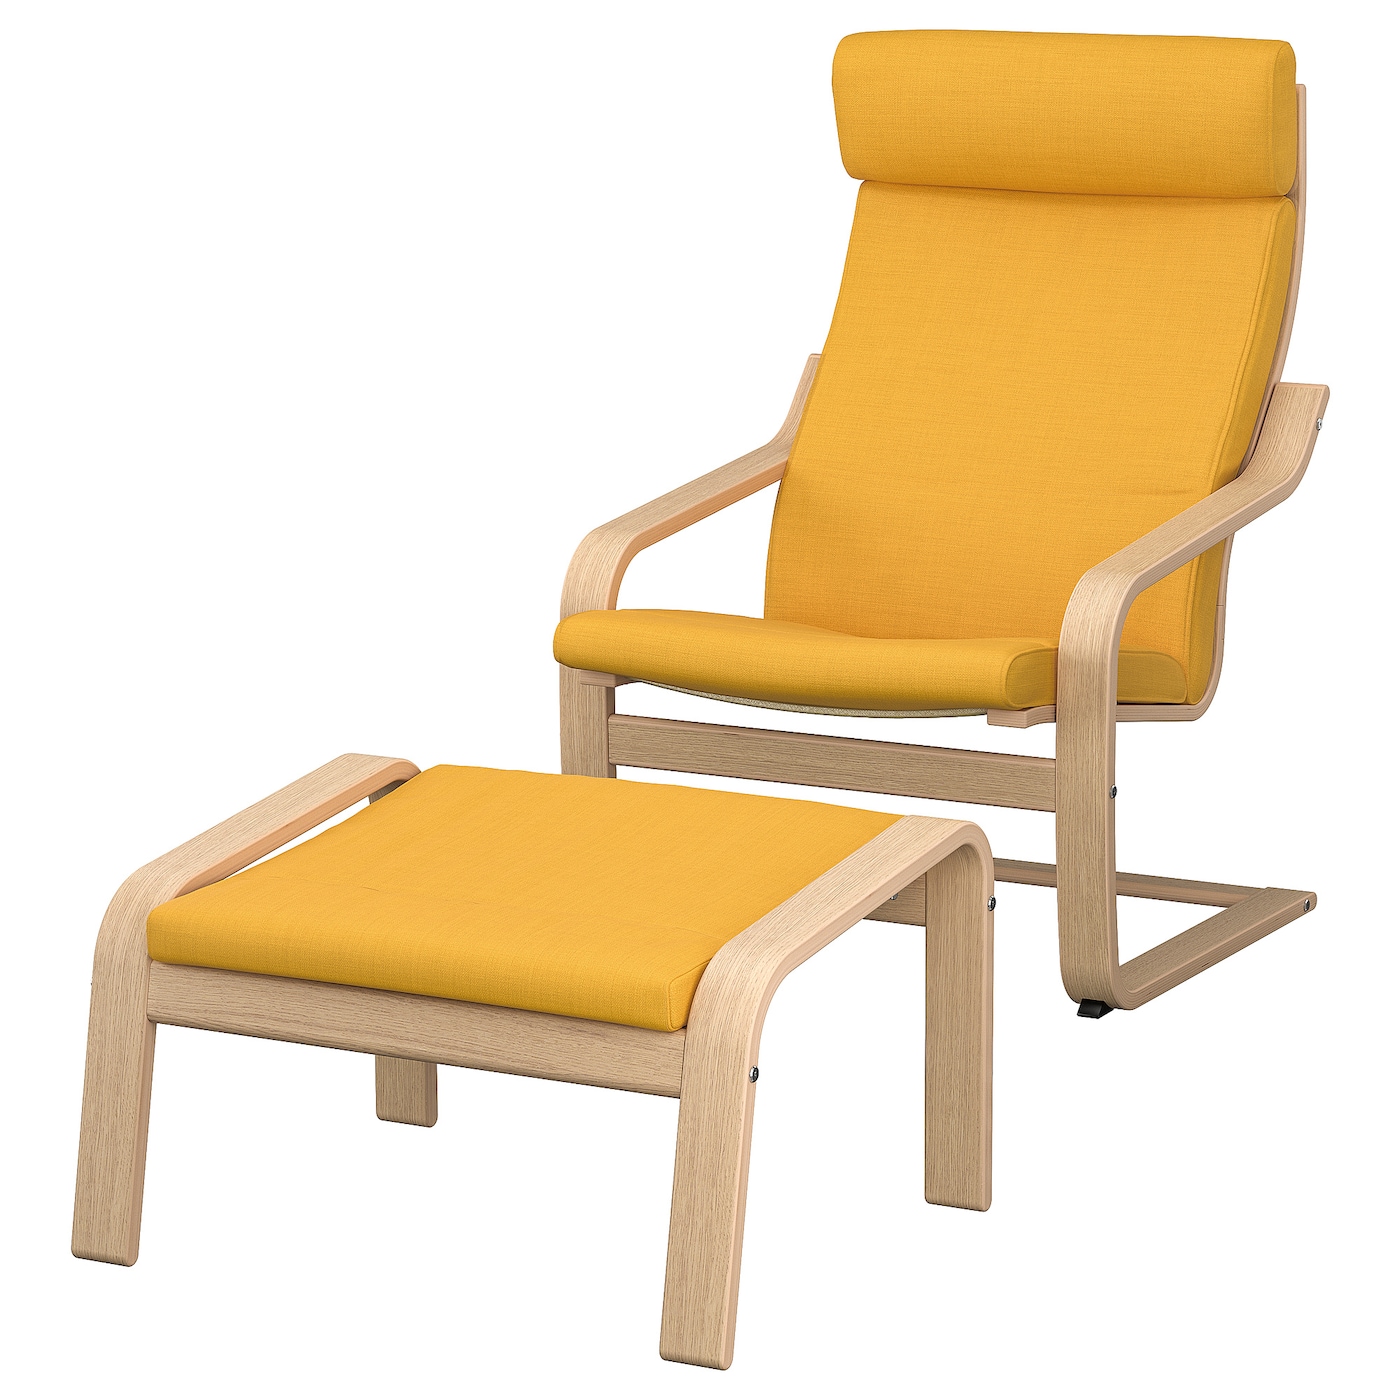 ПОЭНГ Кресло и подставка для ног, дубовый шпон светлый/Скифтебо желтый POÄNG IKEA подставка для ног 7046054 7046055 7046056 желтый